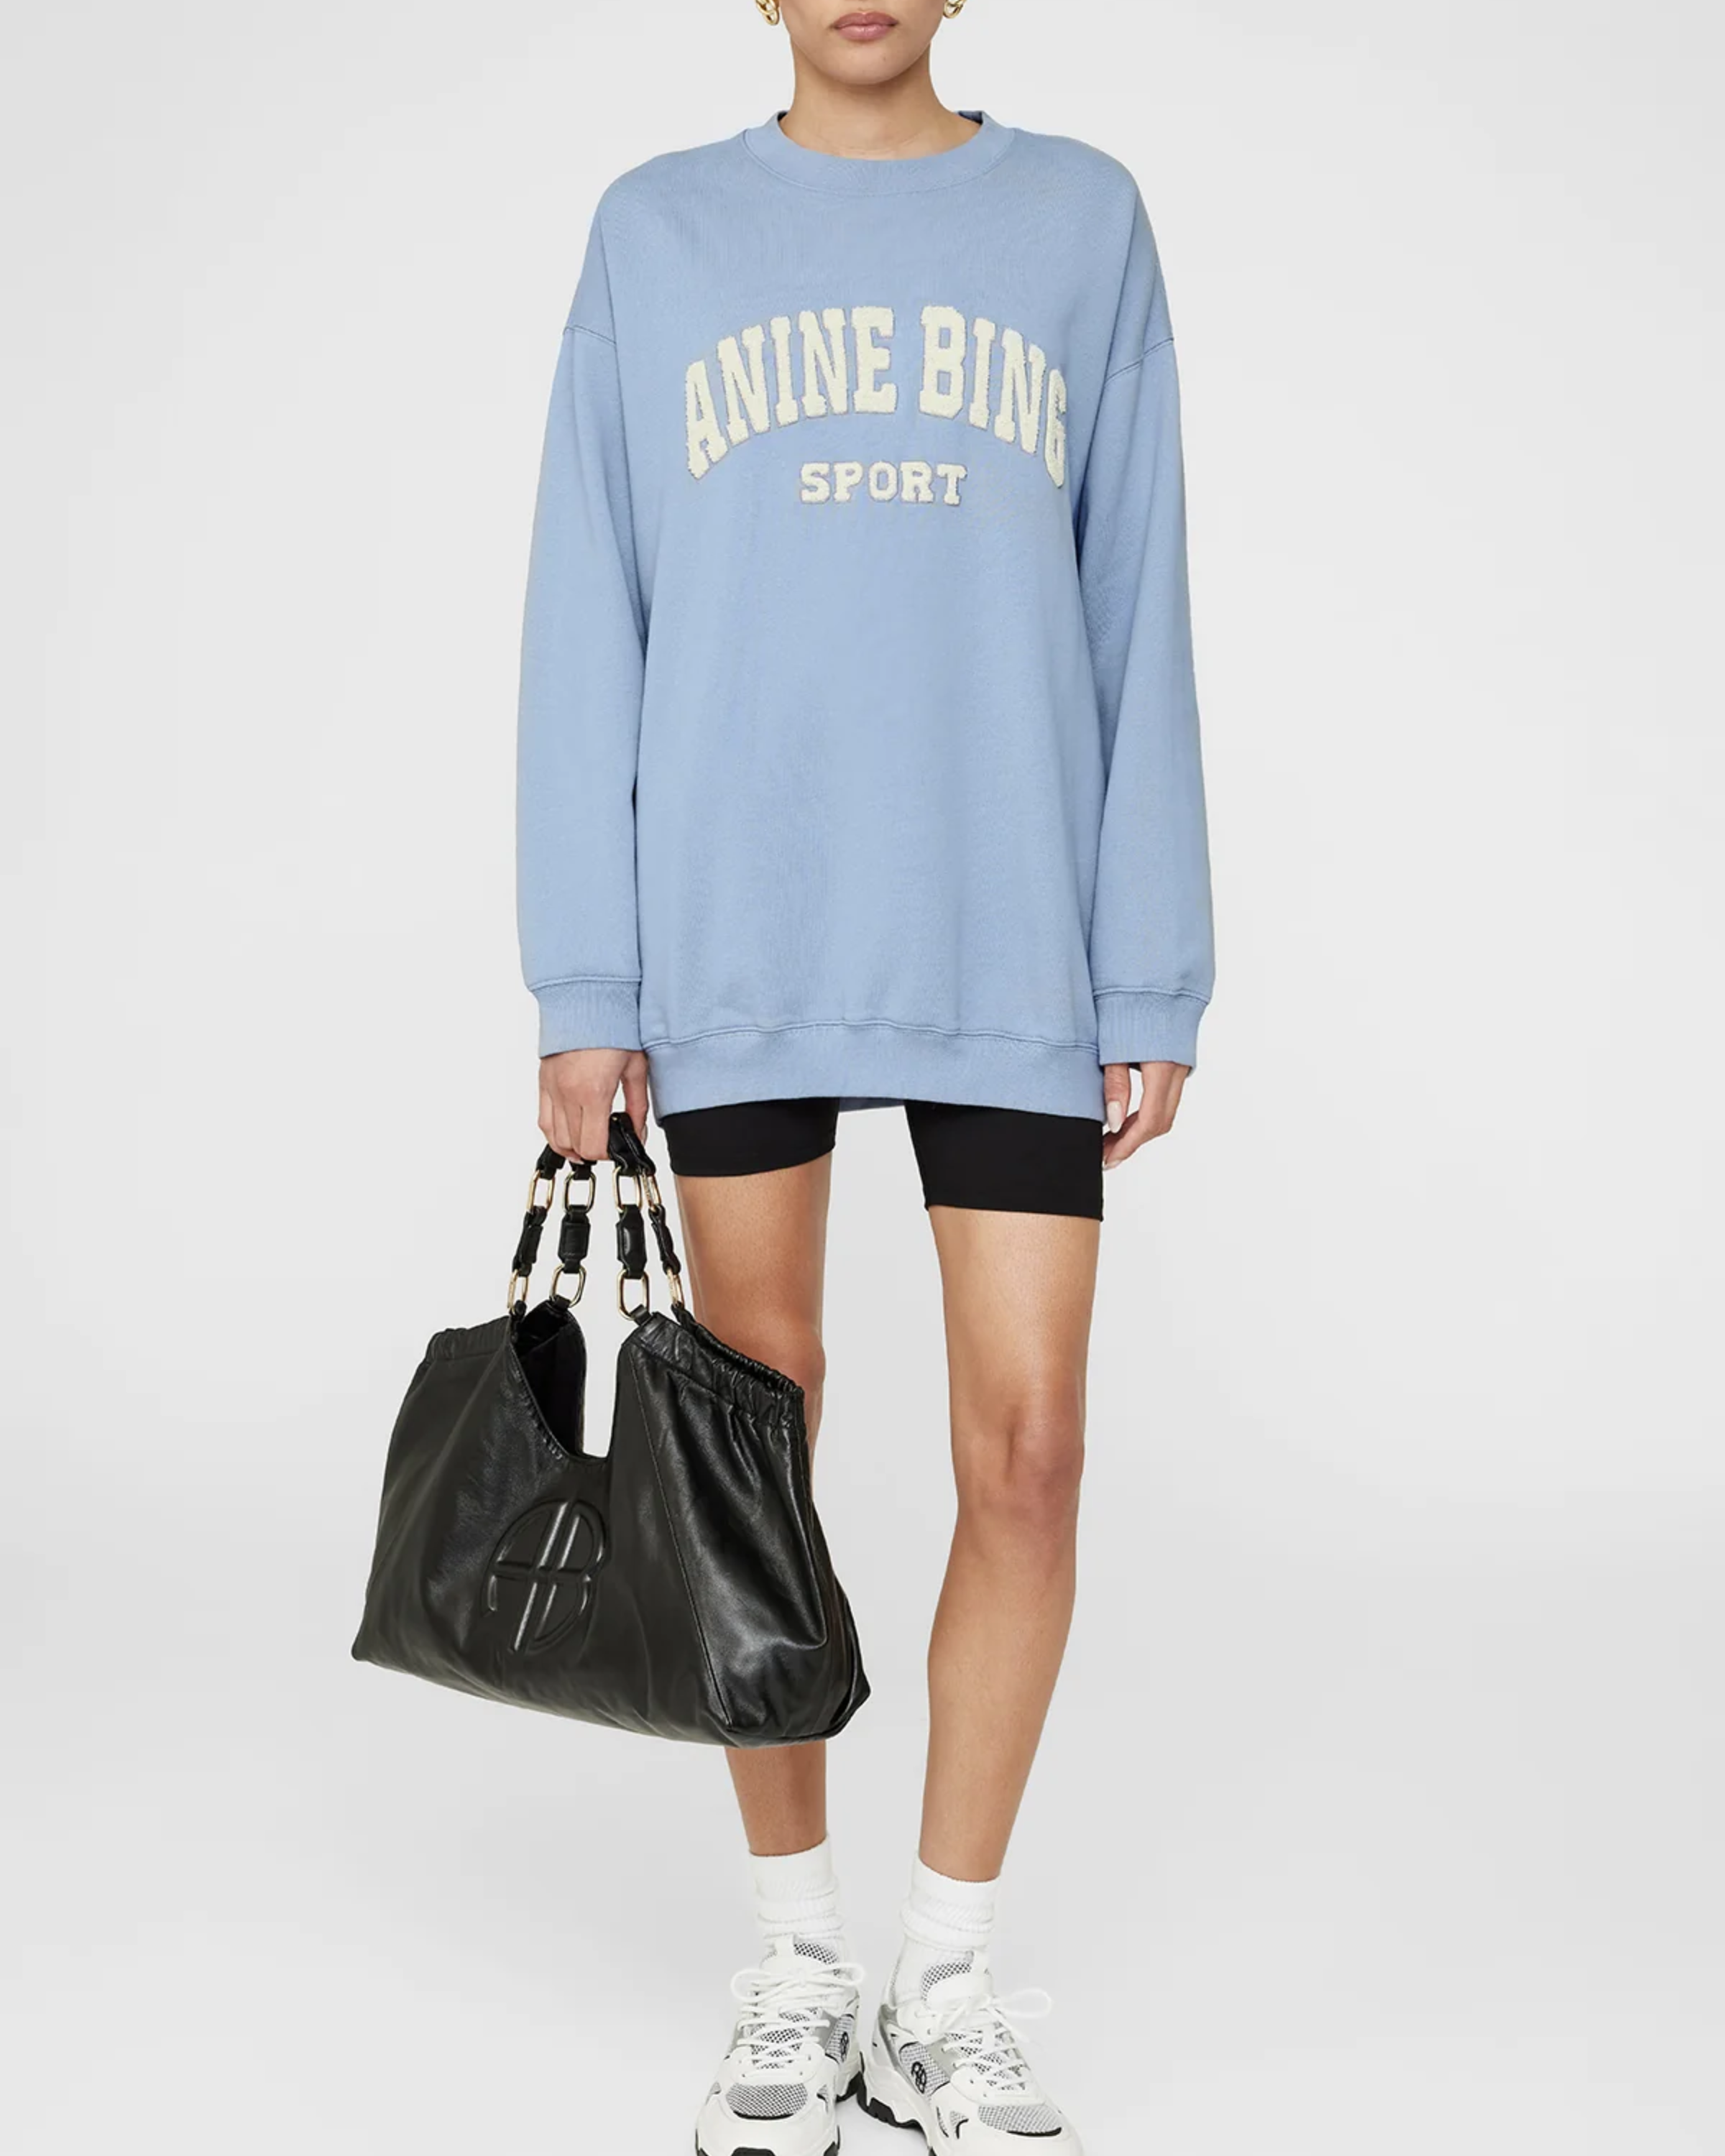 Anine Bing Tyler Sweatshirt in Capri Blue